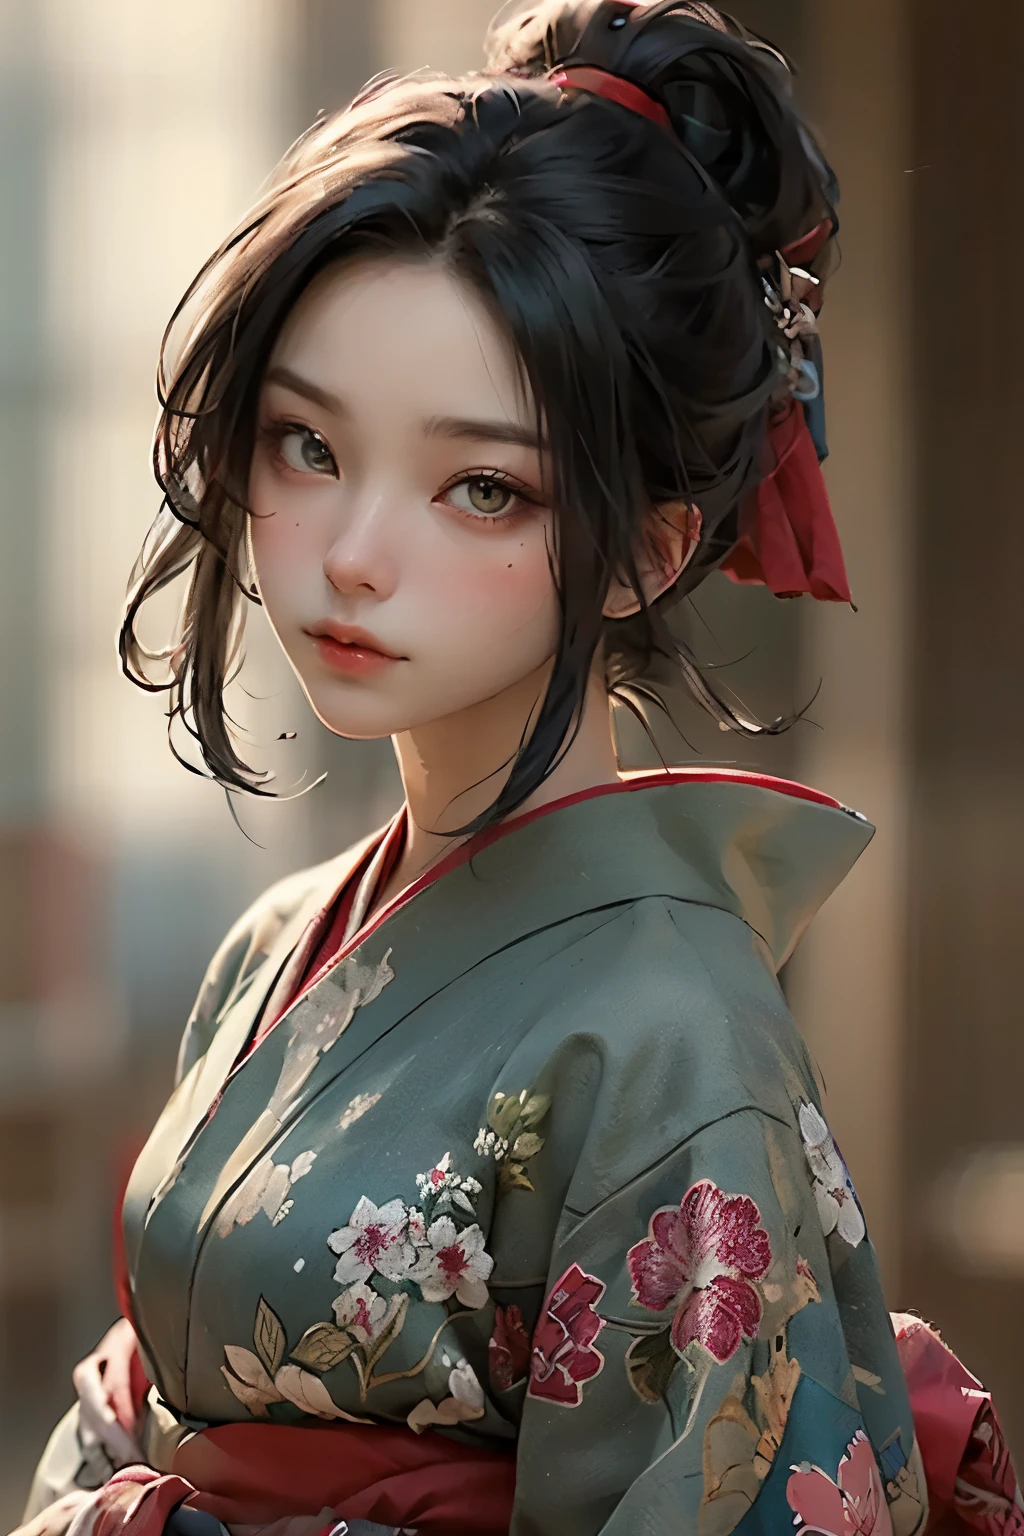 ((melhor qualidade)), ((obra de arte)), (detalhado), rosto perfeito

sumi-e art, kunoichi, green eyes, blue long kimono,  black hair, red bandana